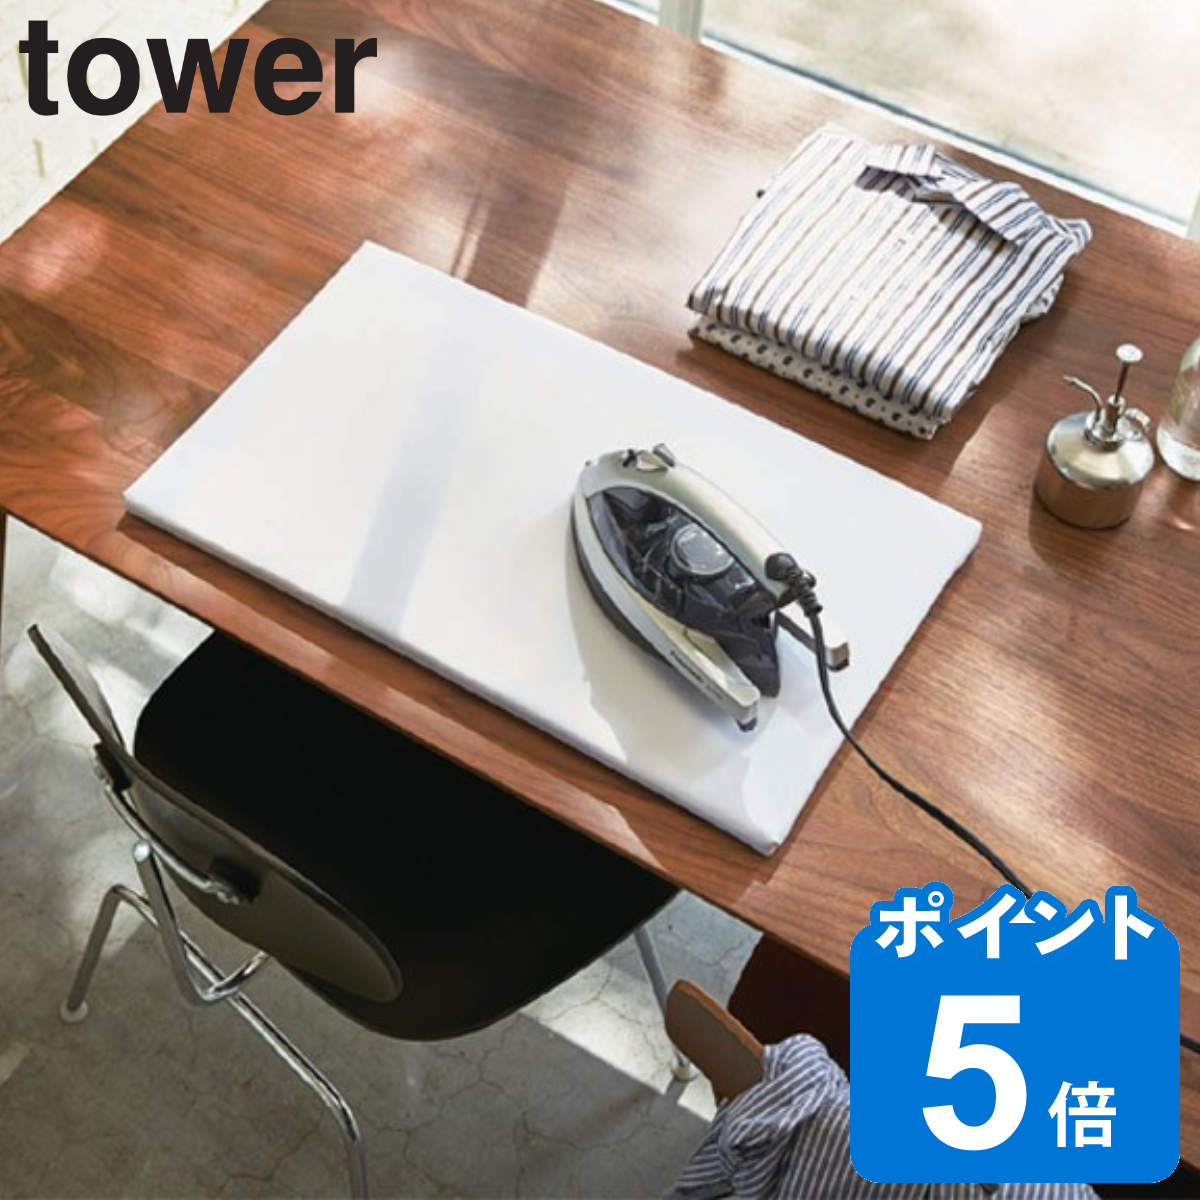 山崎実業 tower 平型アイロン台 タワー